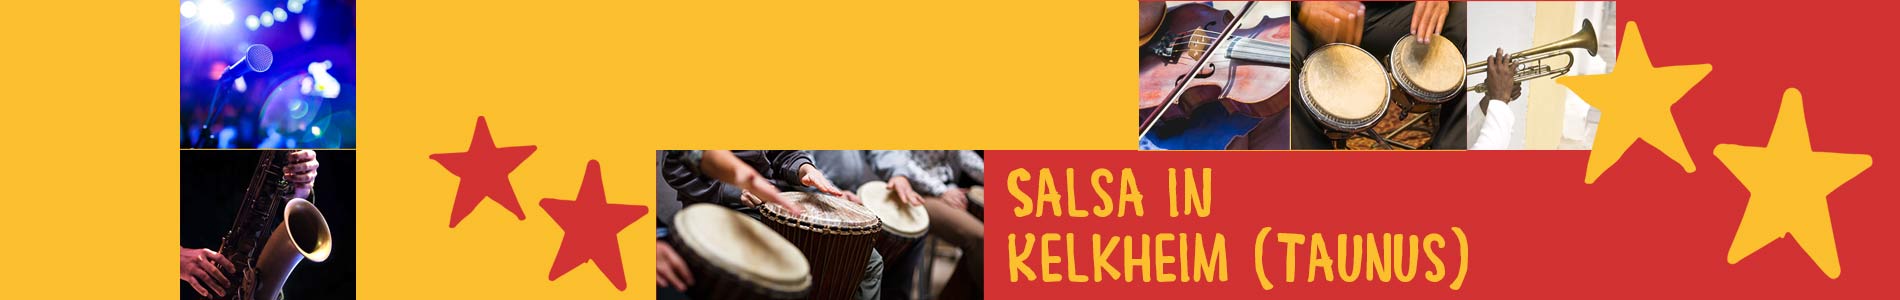 Salsa in Kelkheim (Taunus) – Salsa lernen und tanzen, Tanzkurse, Partys, Veranstaltungen